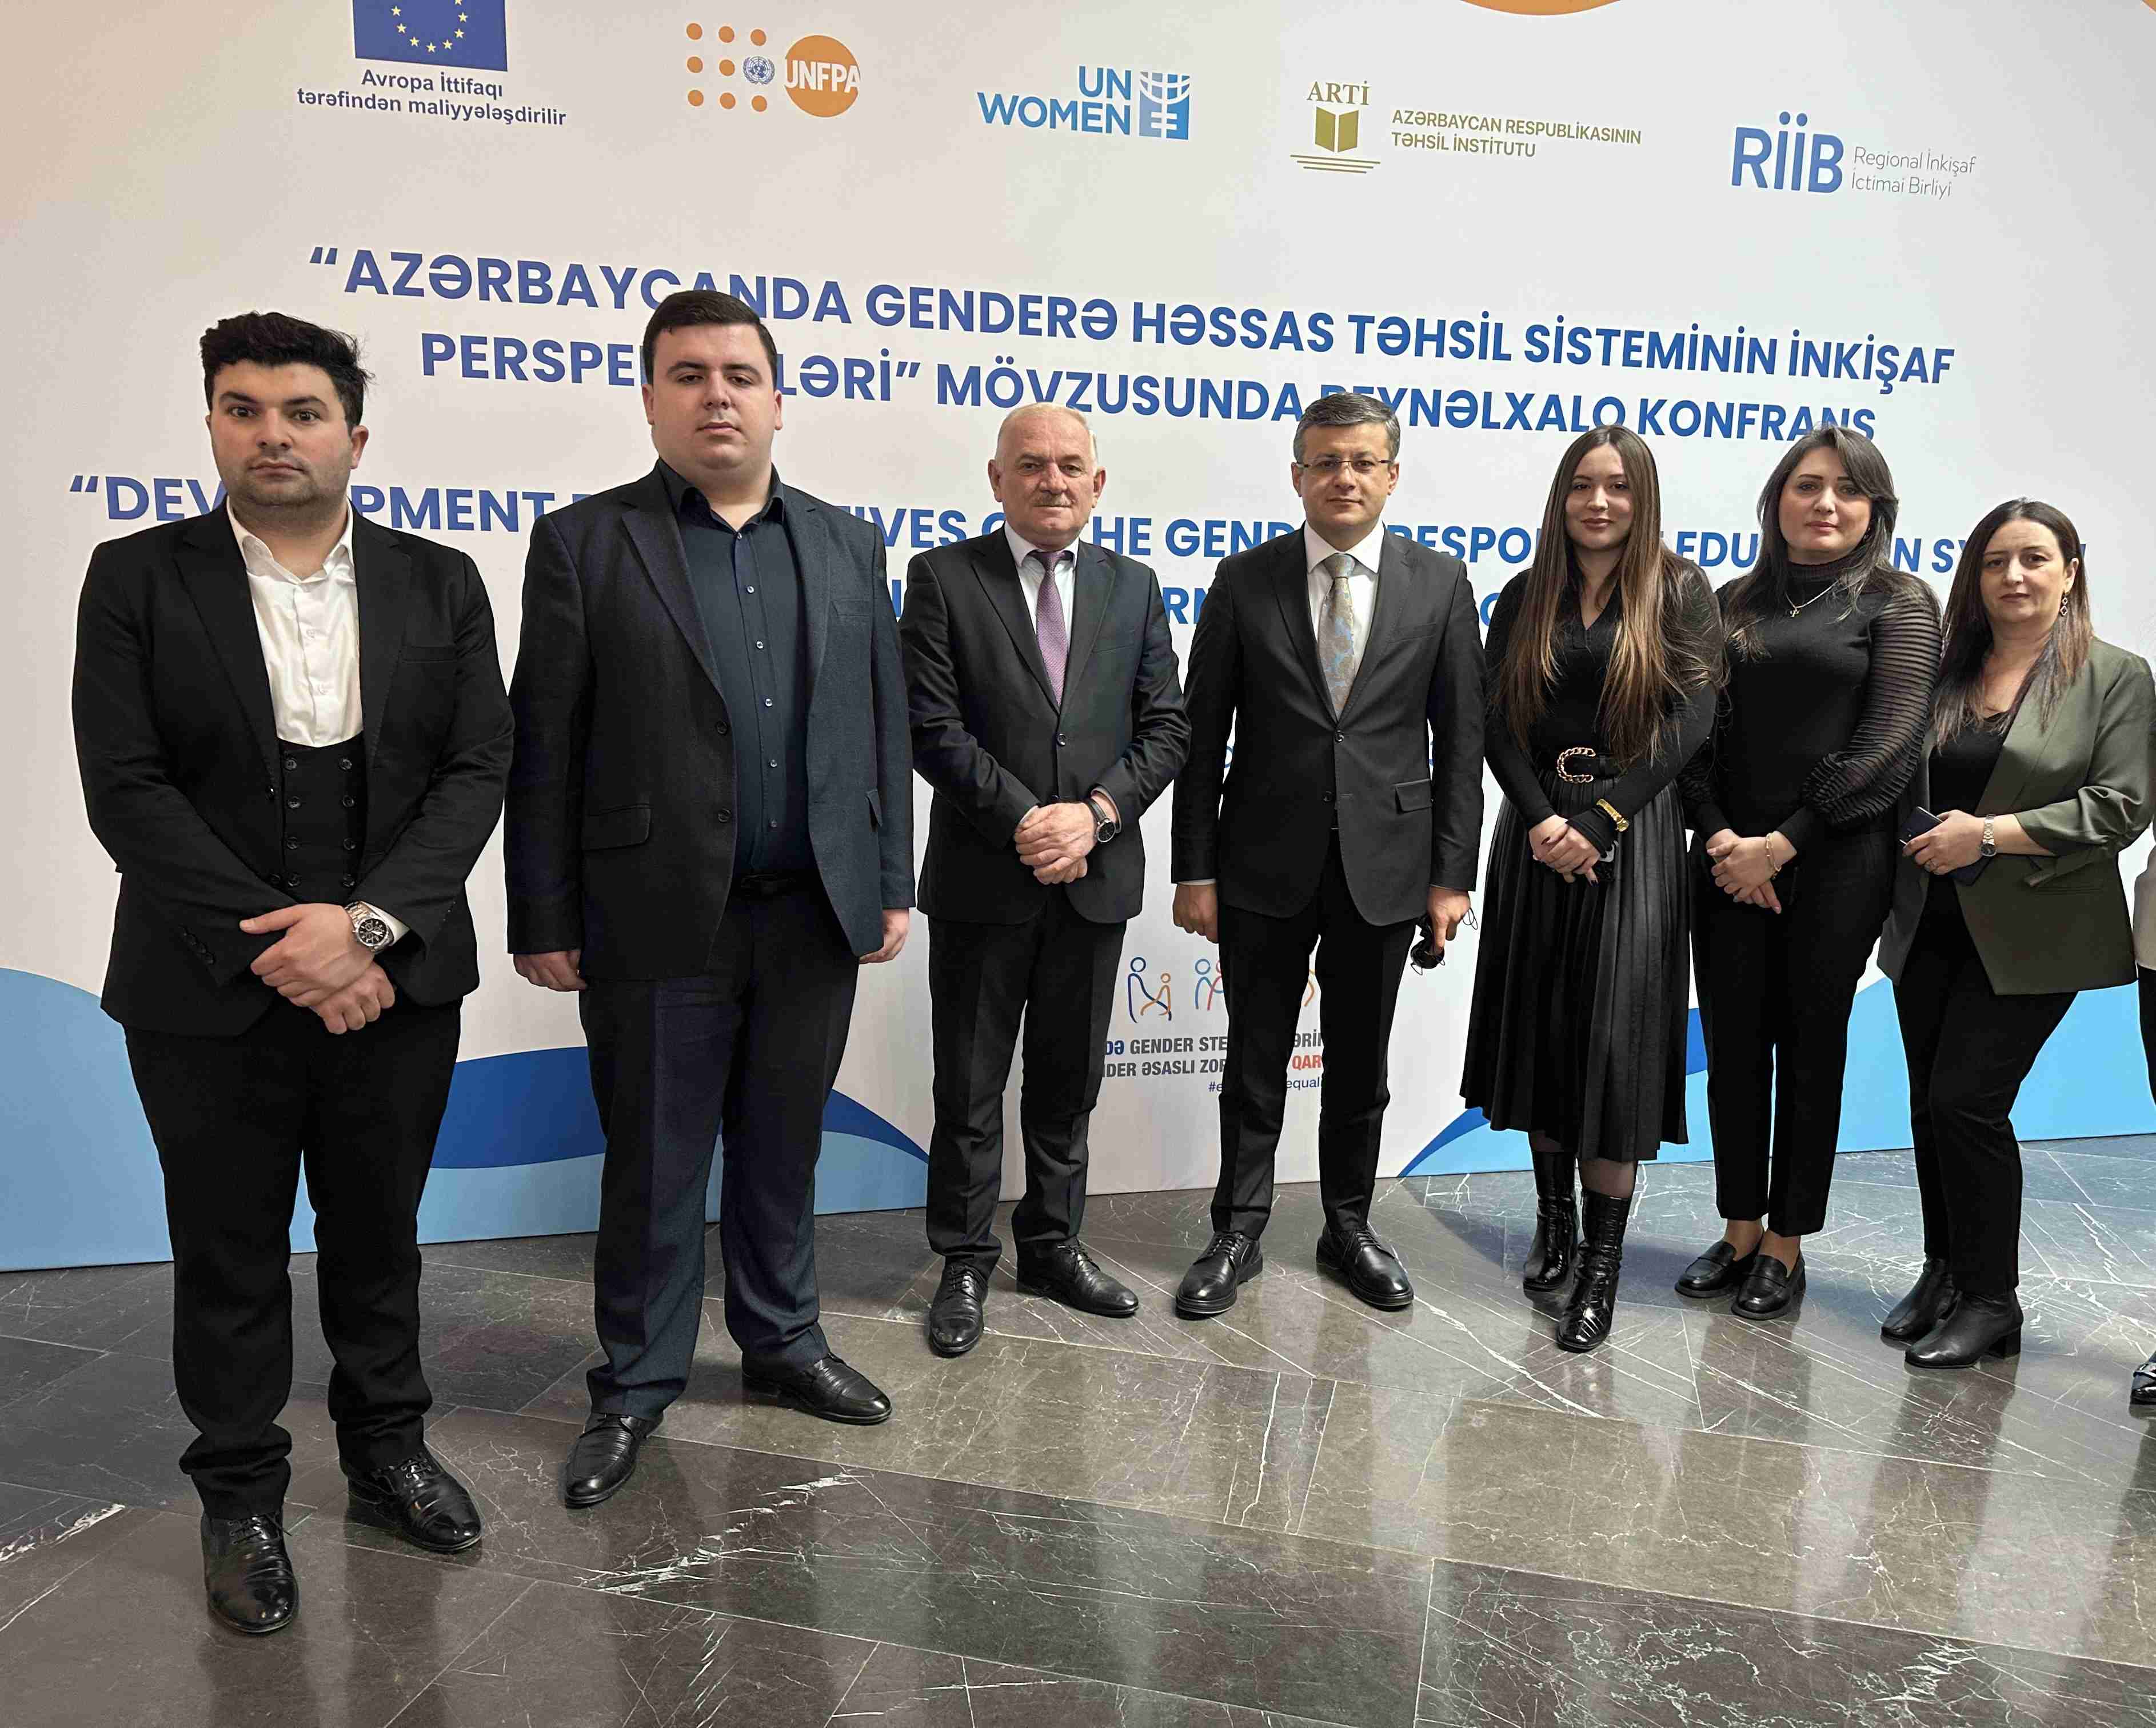 Odlar Yurdu Üniversitesi çalışanları, "Azerbaycan'da toplumsal cinsiyete duyarlı eğitim sisteminin gelişme umutları" konulu uluslararası konferansa katıldı